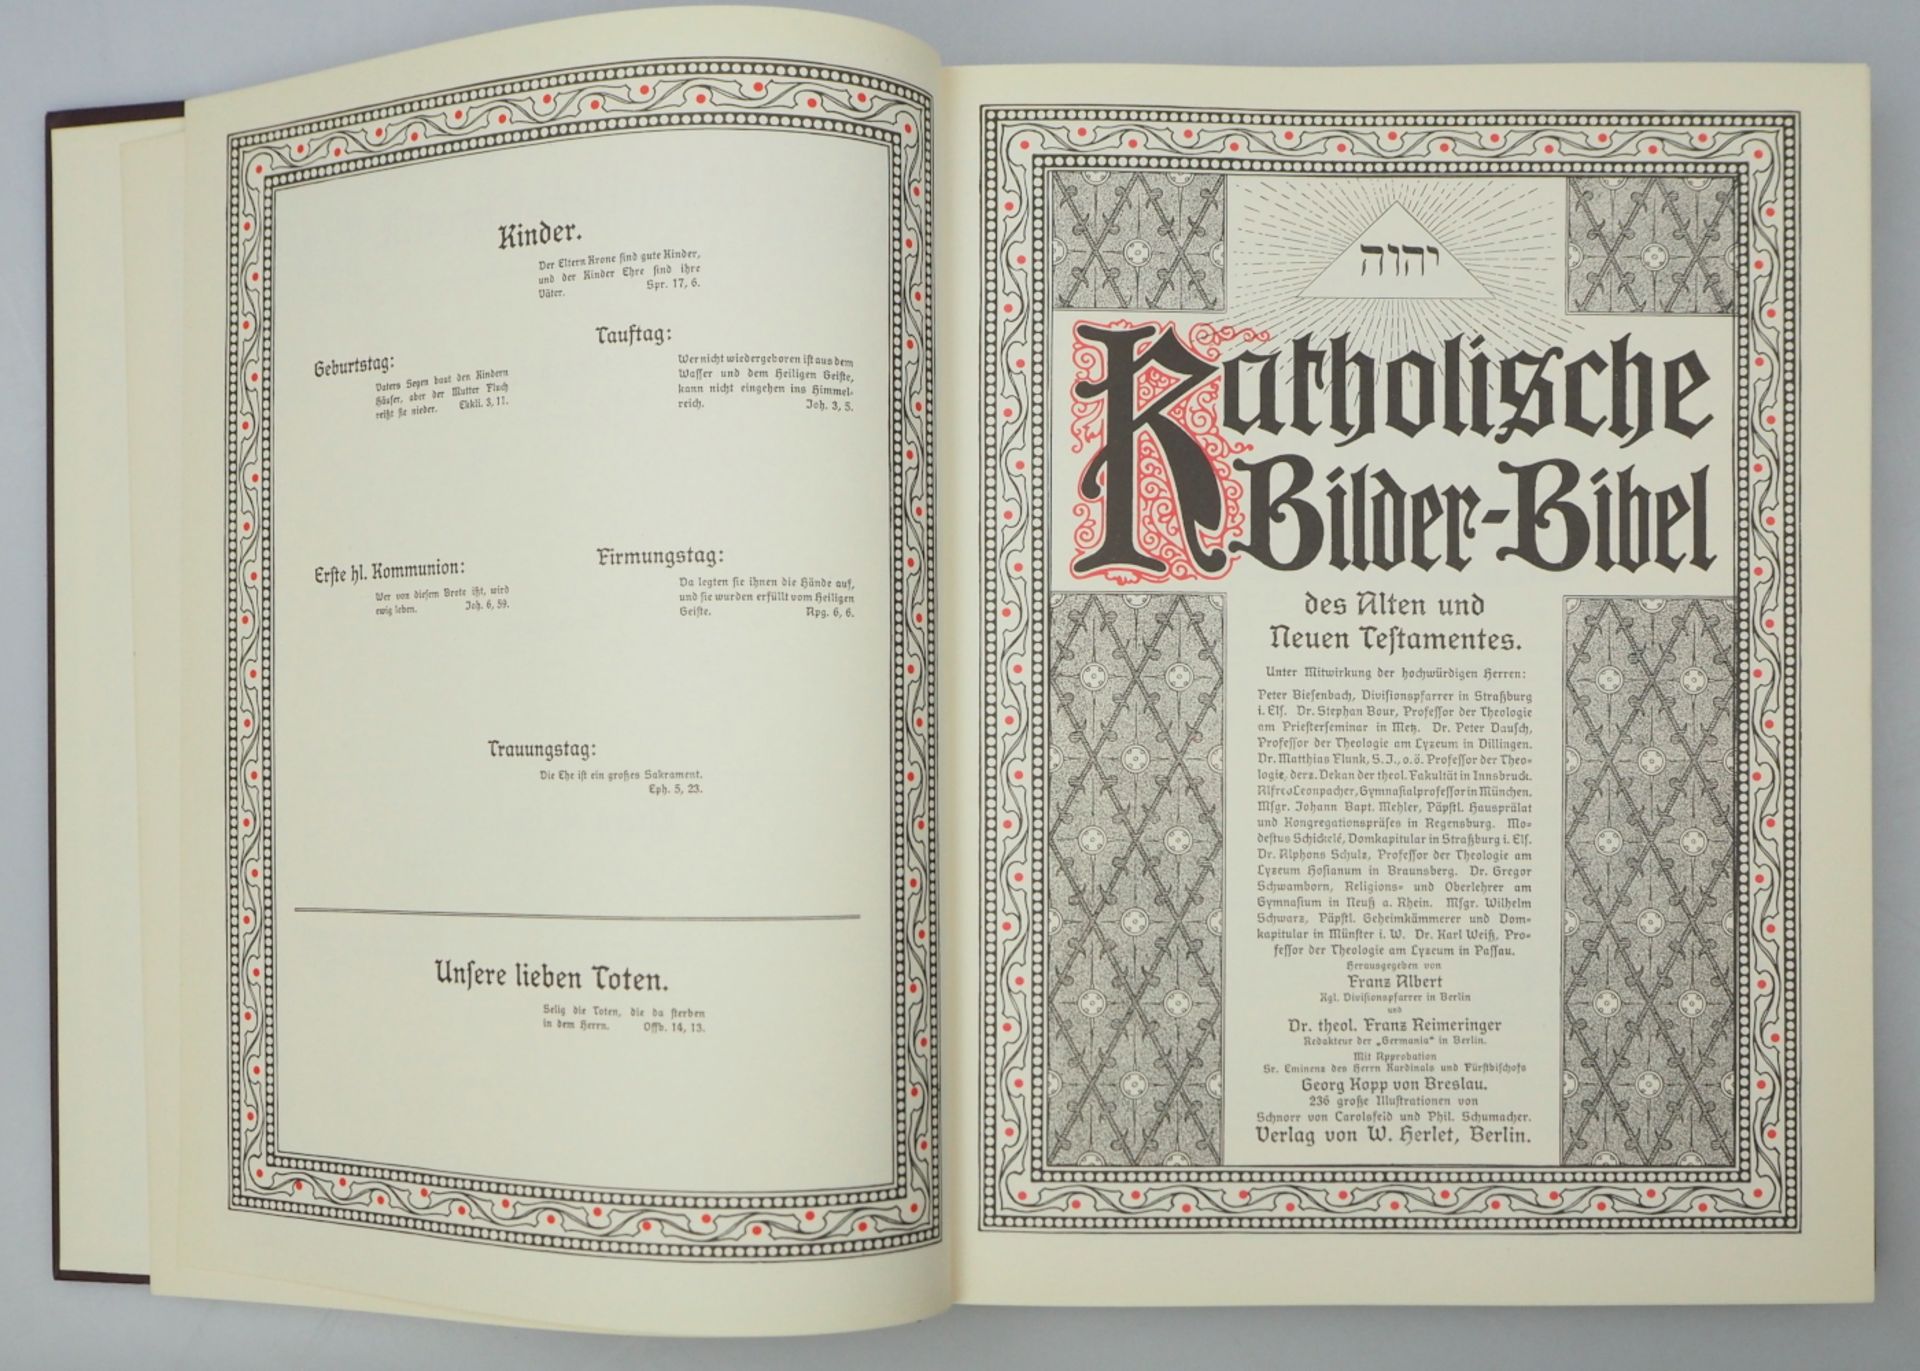 1 Prachtbibel "Die Heilige Schrift des Alten und Neuen Testamentes" Augsburg 1991 - Bild 4 aus 5